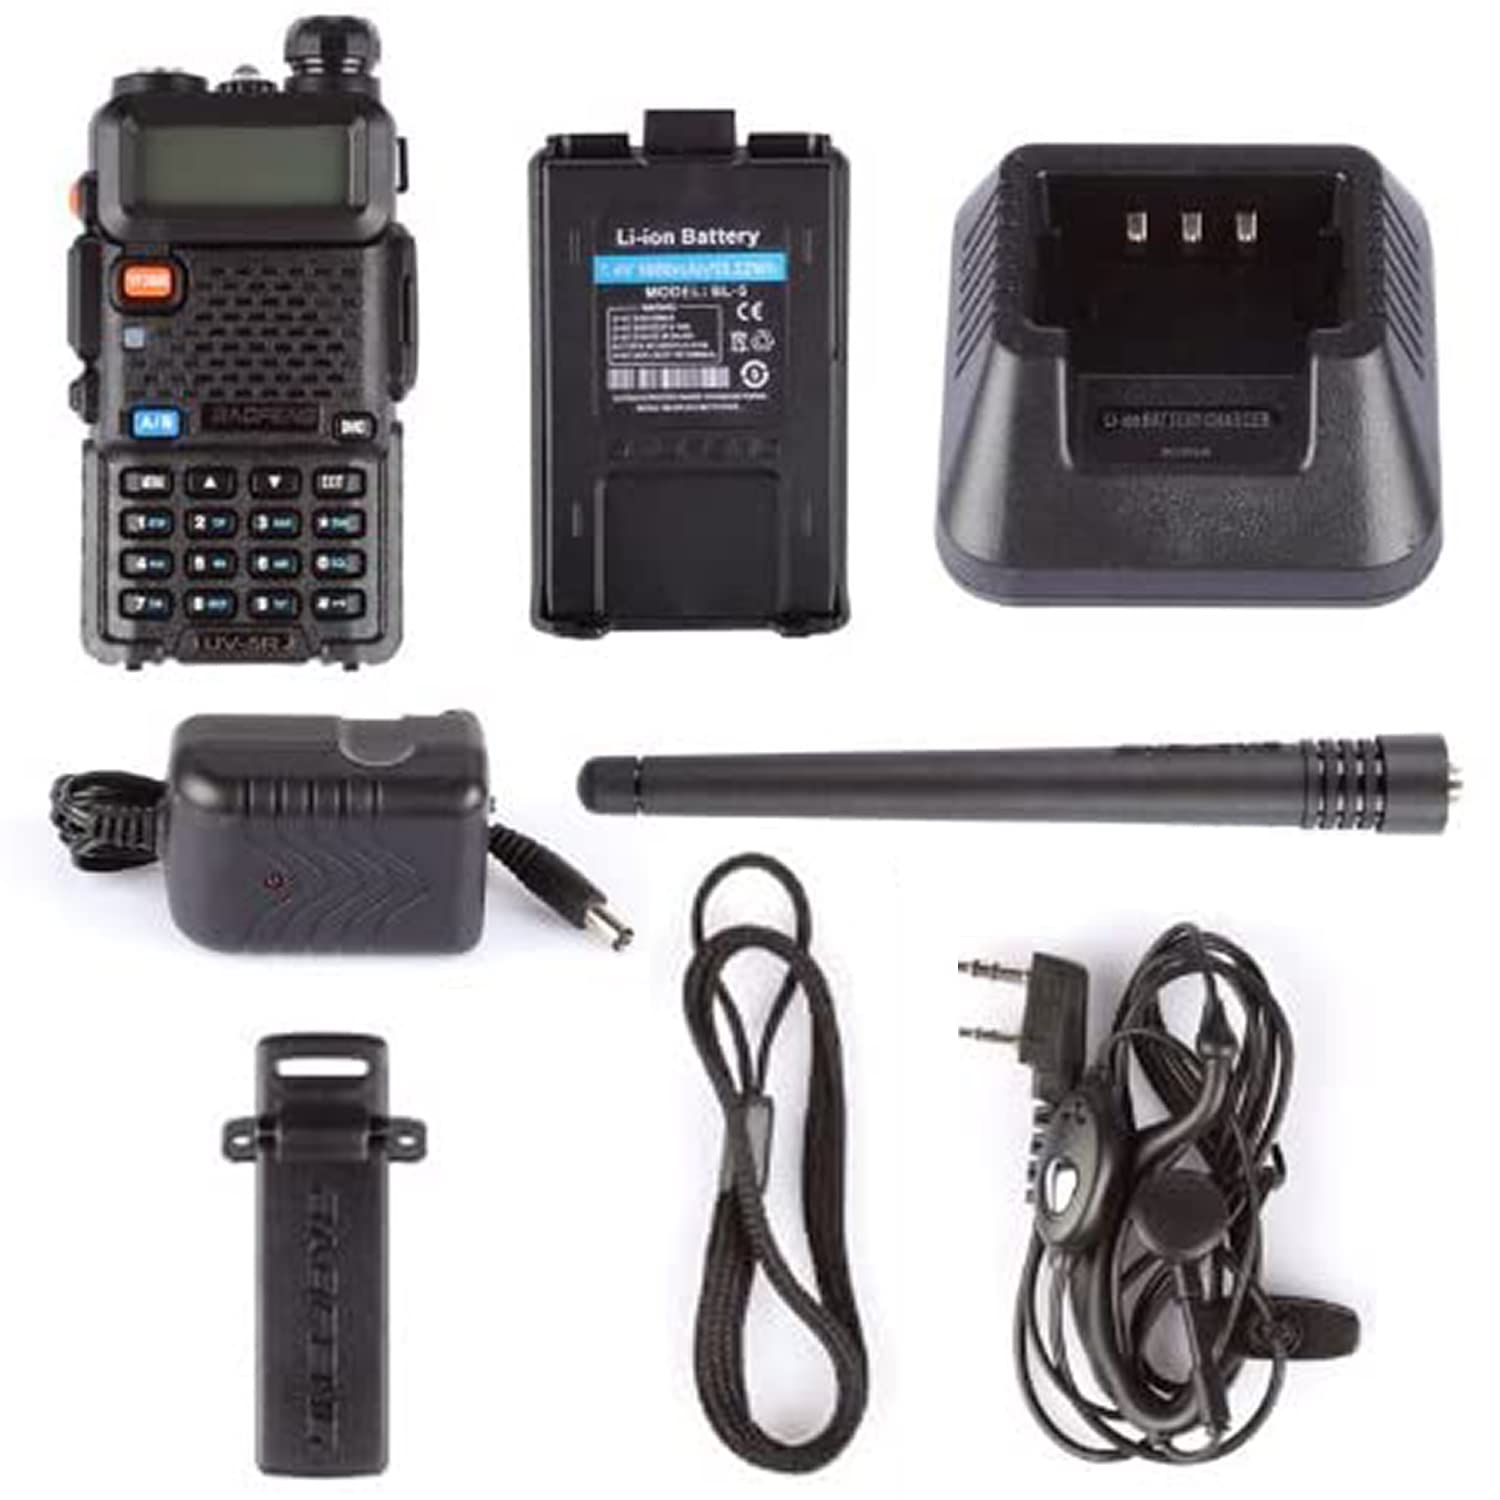 Baofeng UV-5R Two Way Radio Dual Band 144-148/420-450Mhz Walkie Talkie 1800mAh Li-ion Battery(Black)